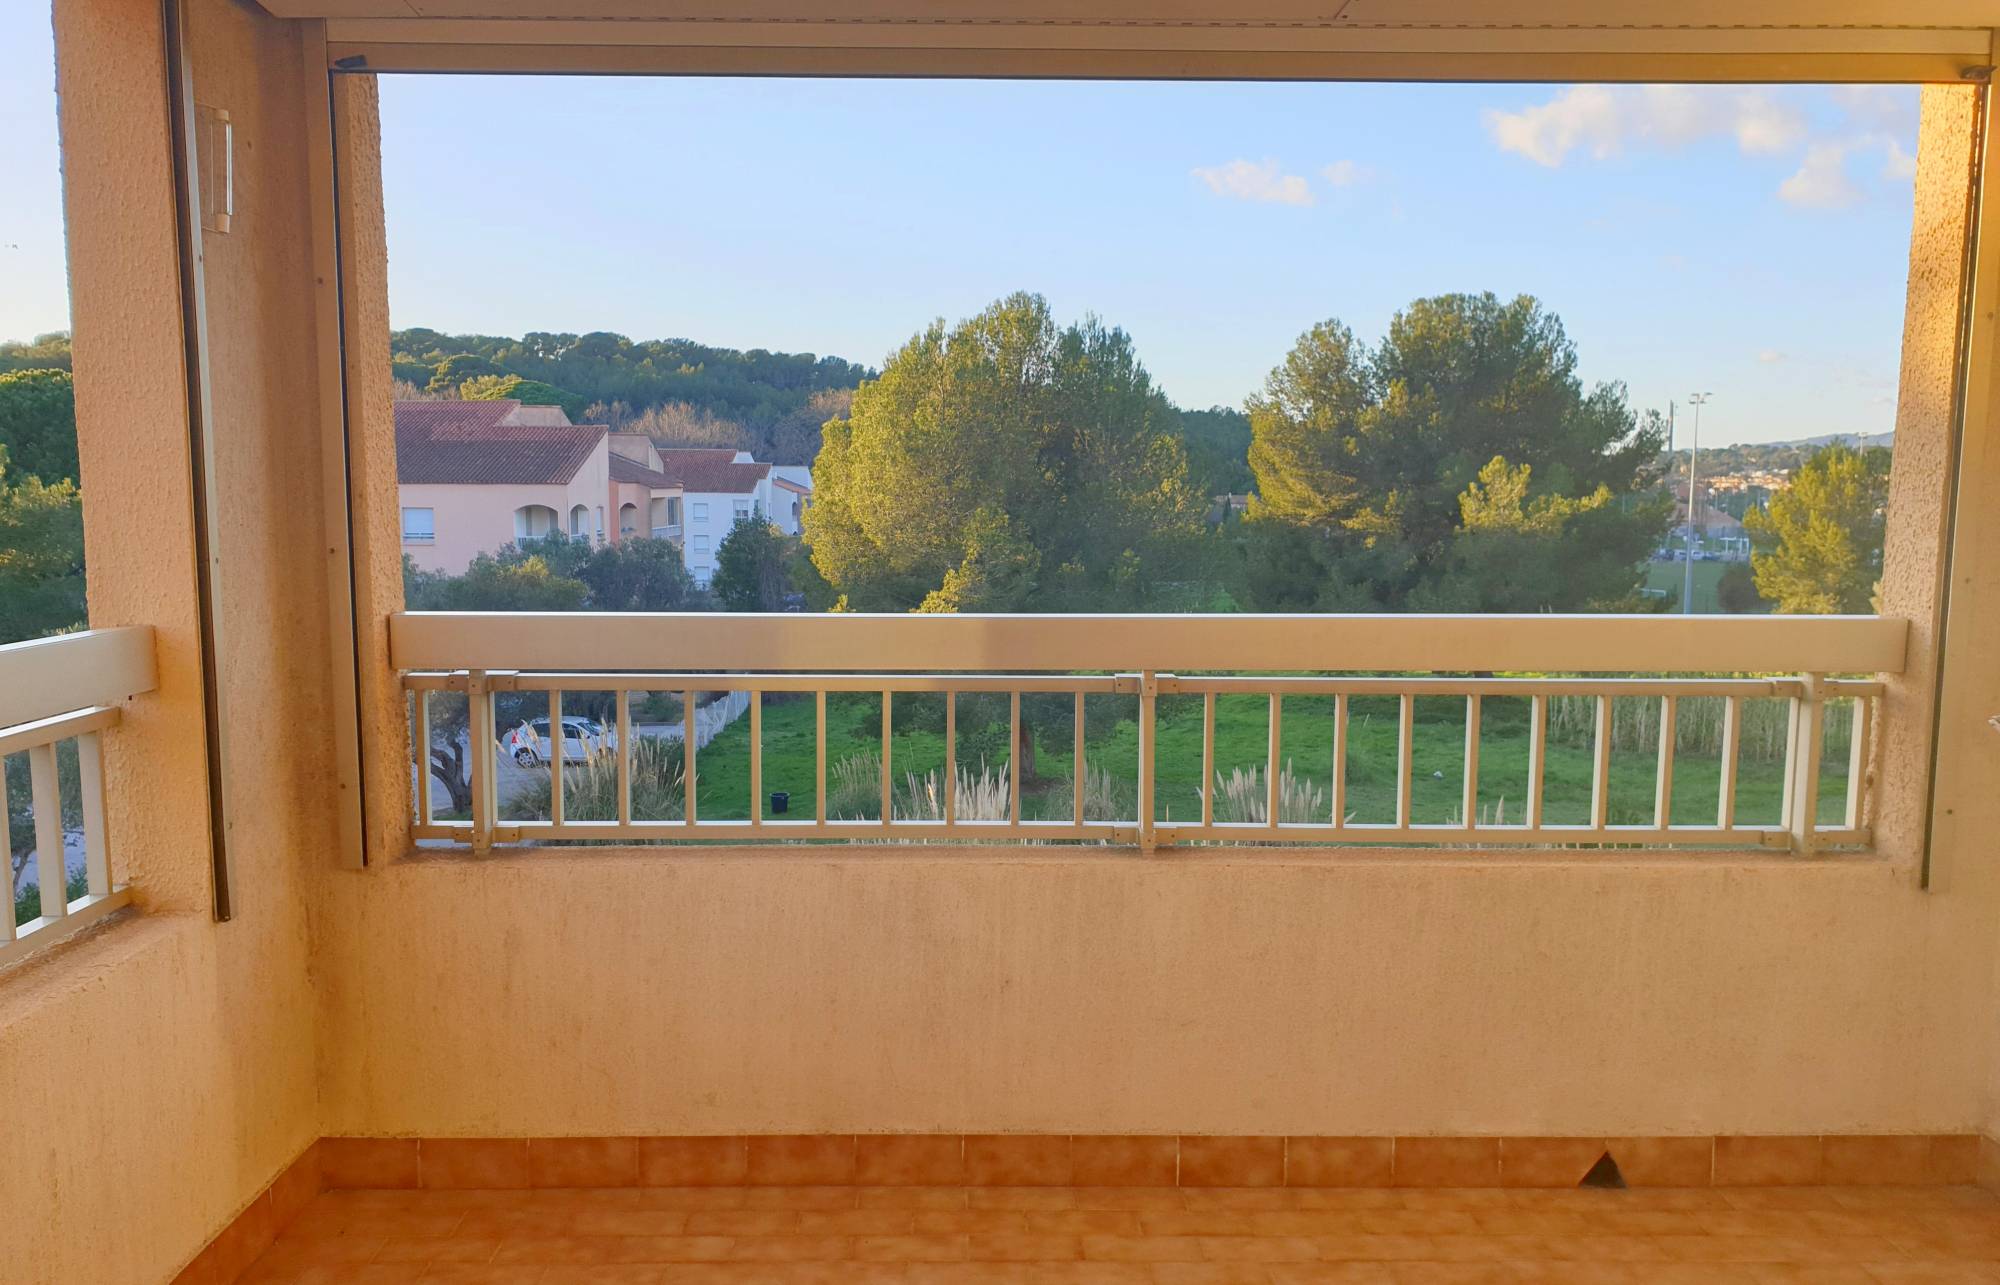 Bel appartement avec terrasse à vendre dans un cadre exceptionnel de Saint Mandrier